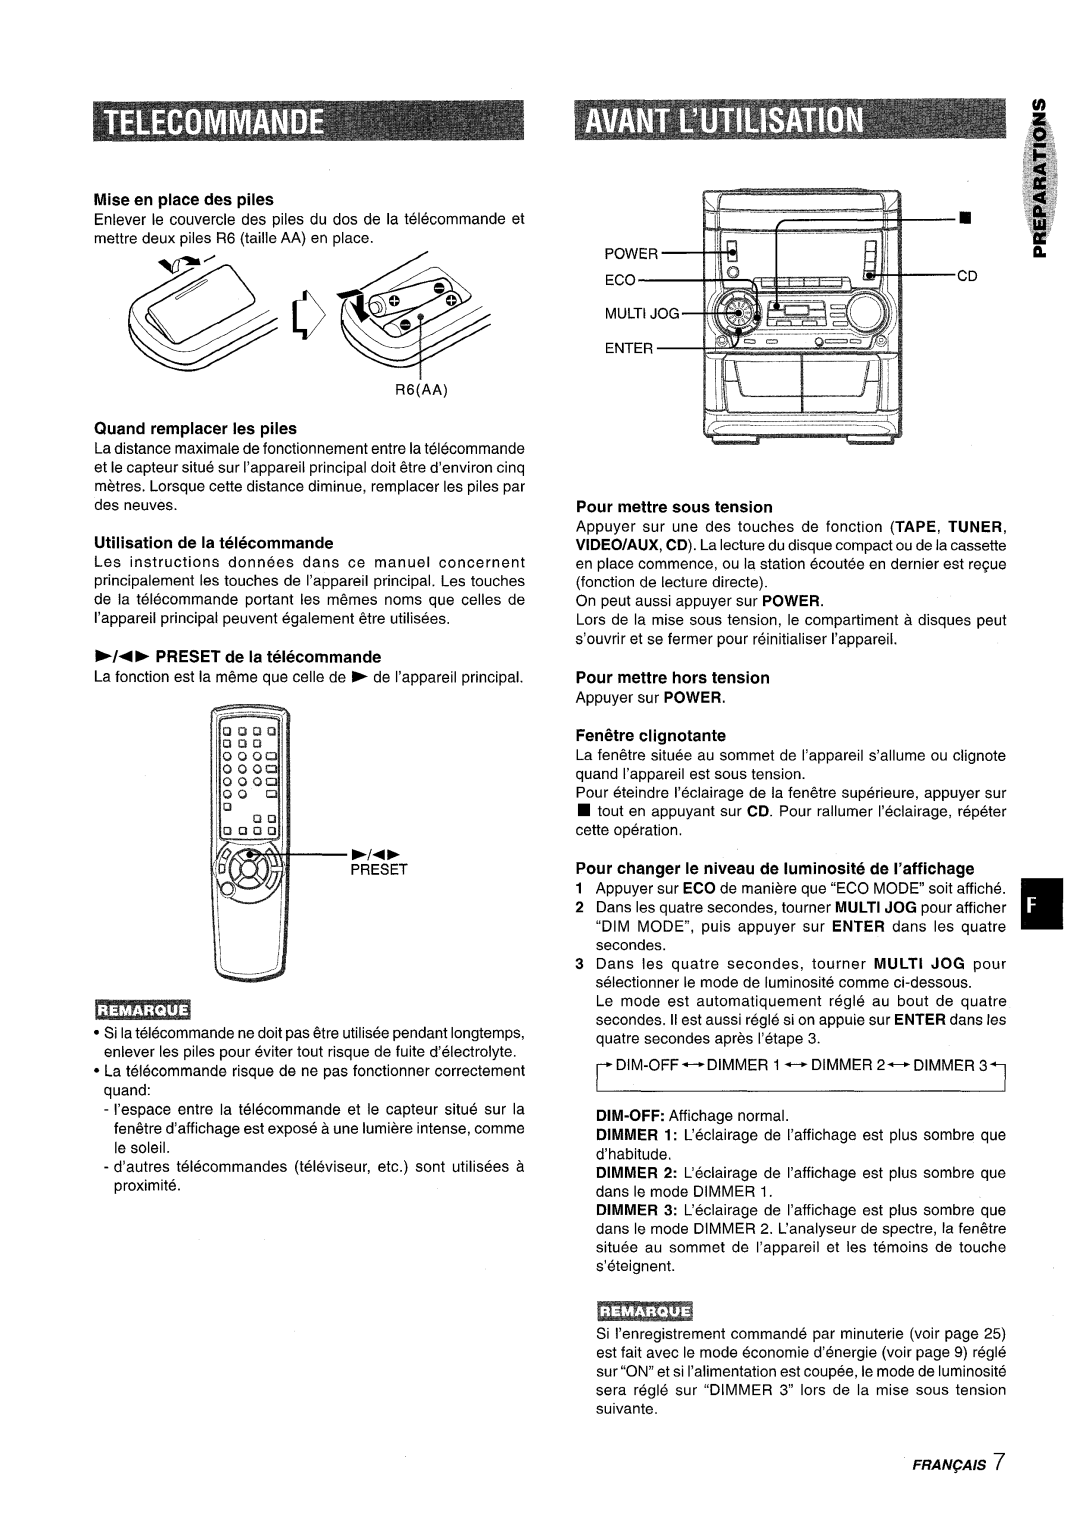 Aiwa SX-WNA555 Mise en place des piles, Quand remplacer Ies piles, Utilisation de la telecommande, FentXre clignotante 